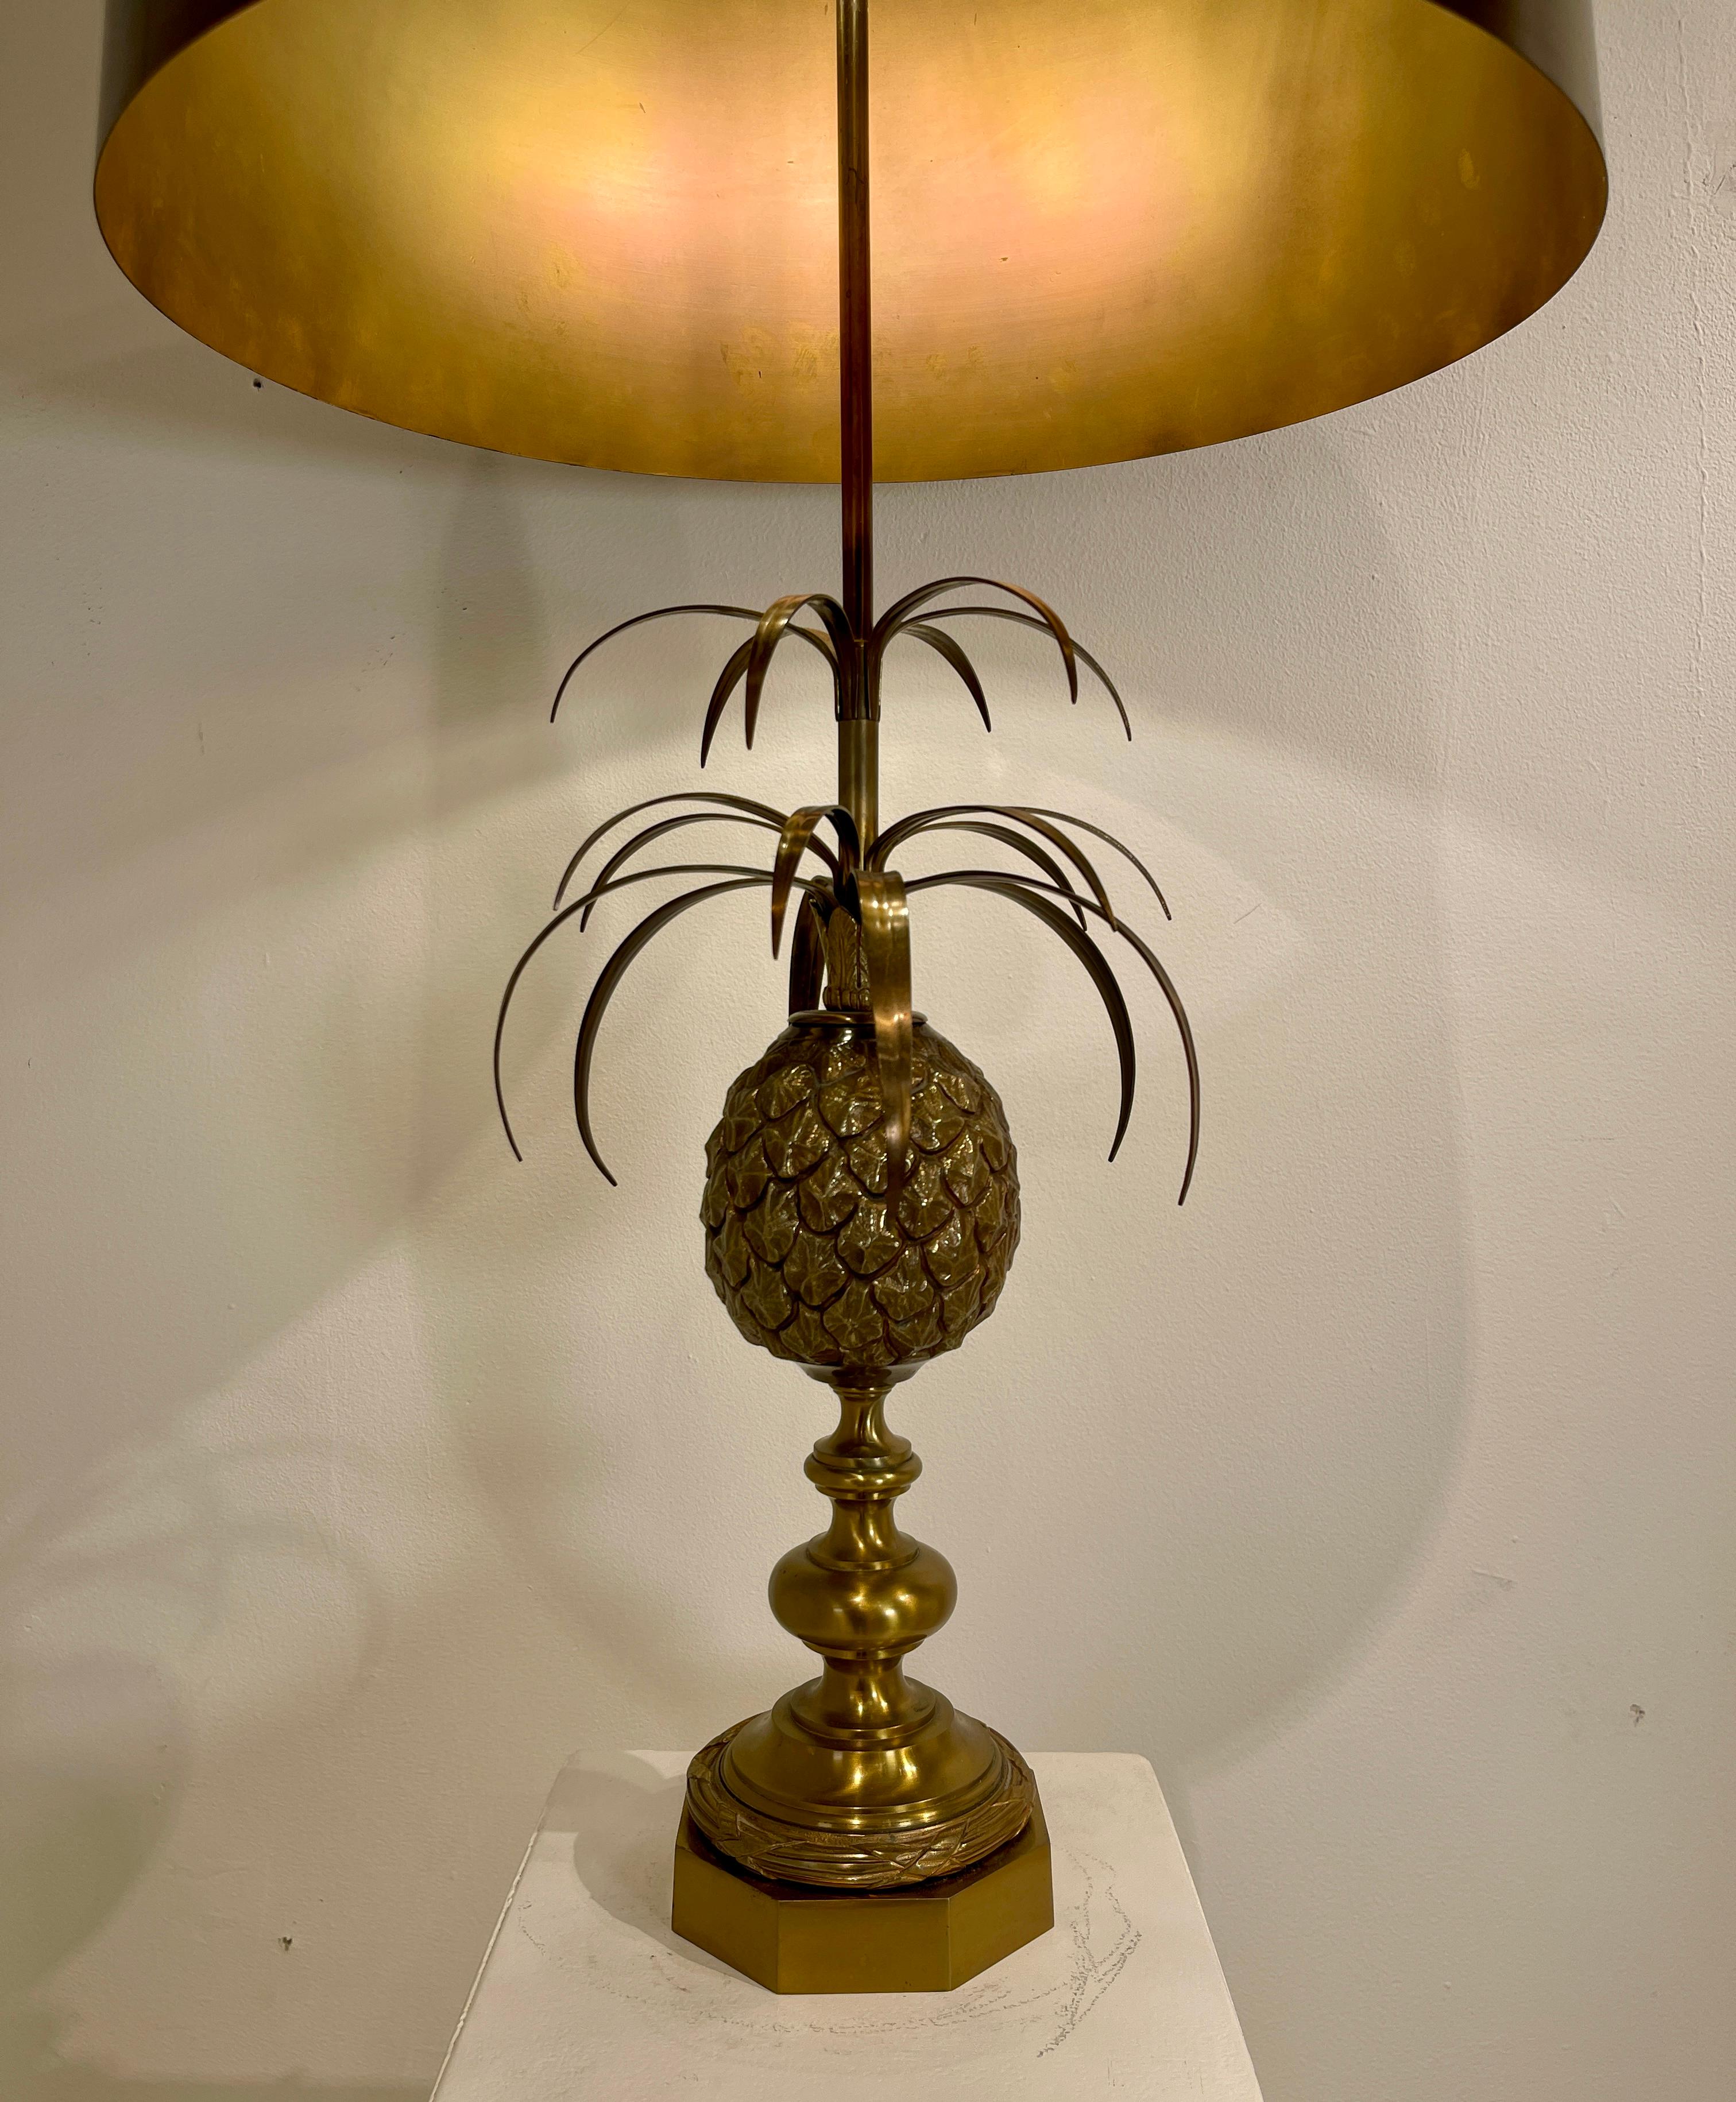 et lamp vintage